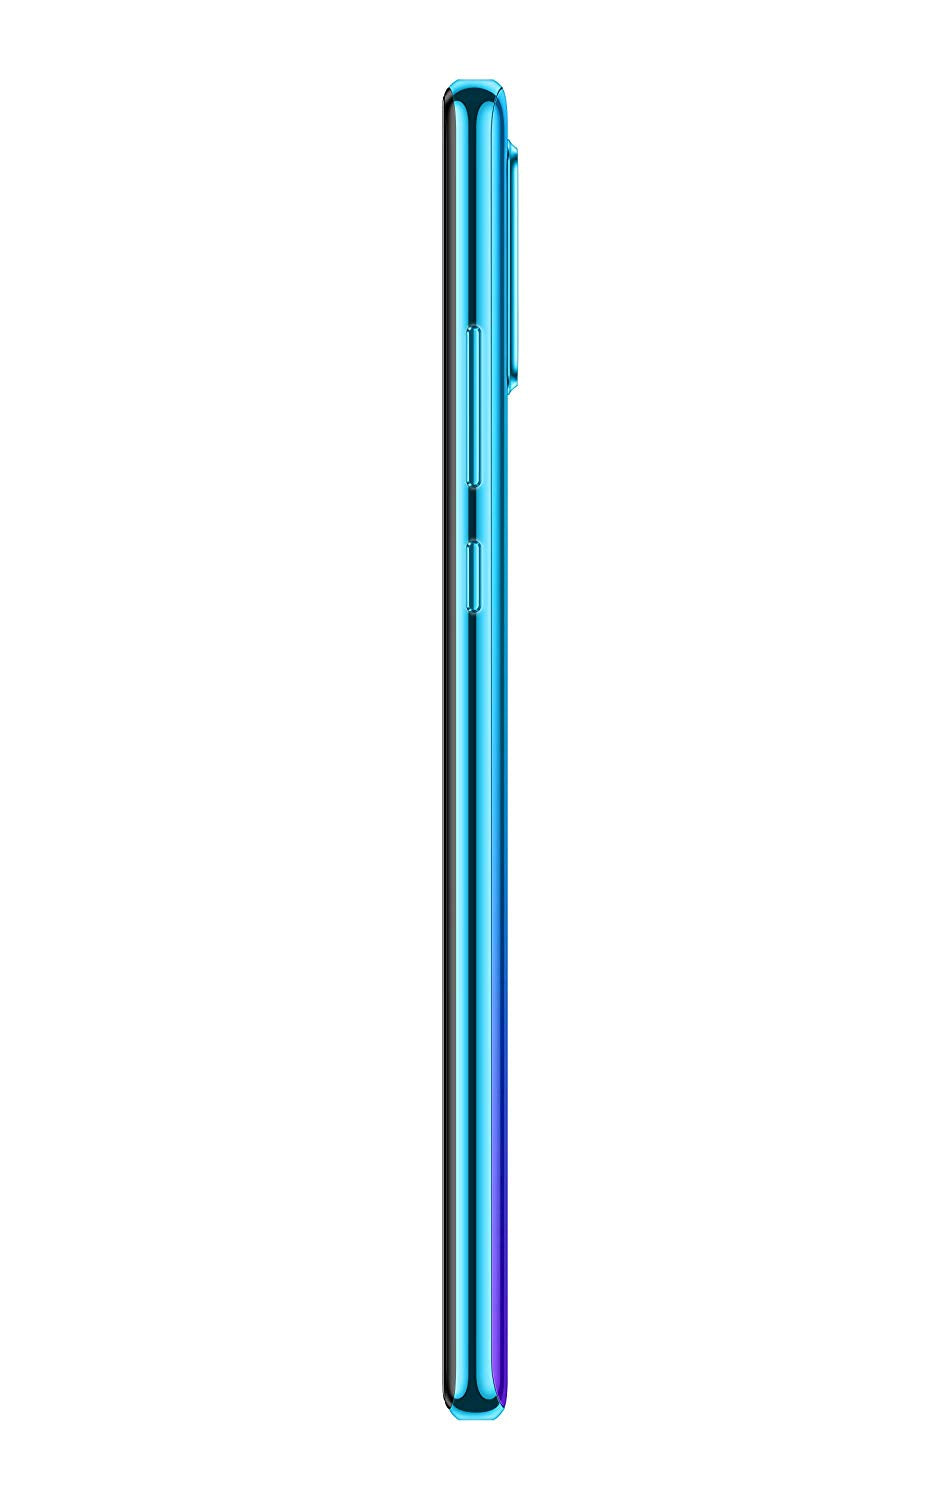 Huawei P30 Lite de 128 GB, azul claro / púrpura, azul pavo real